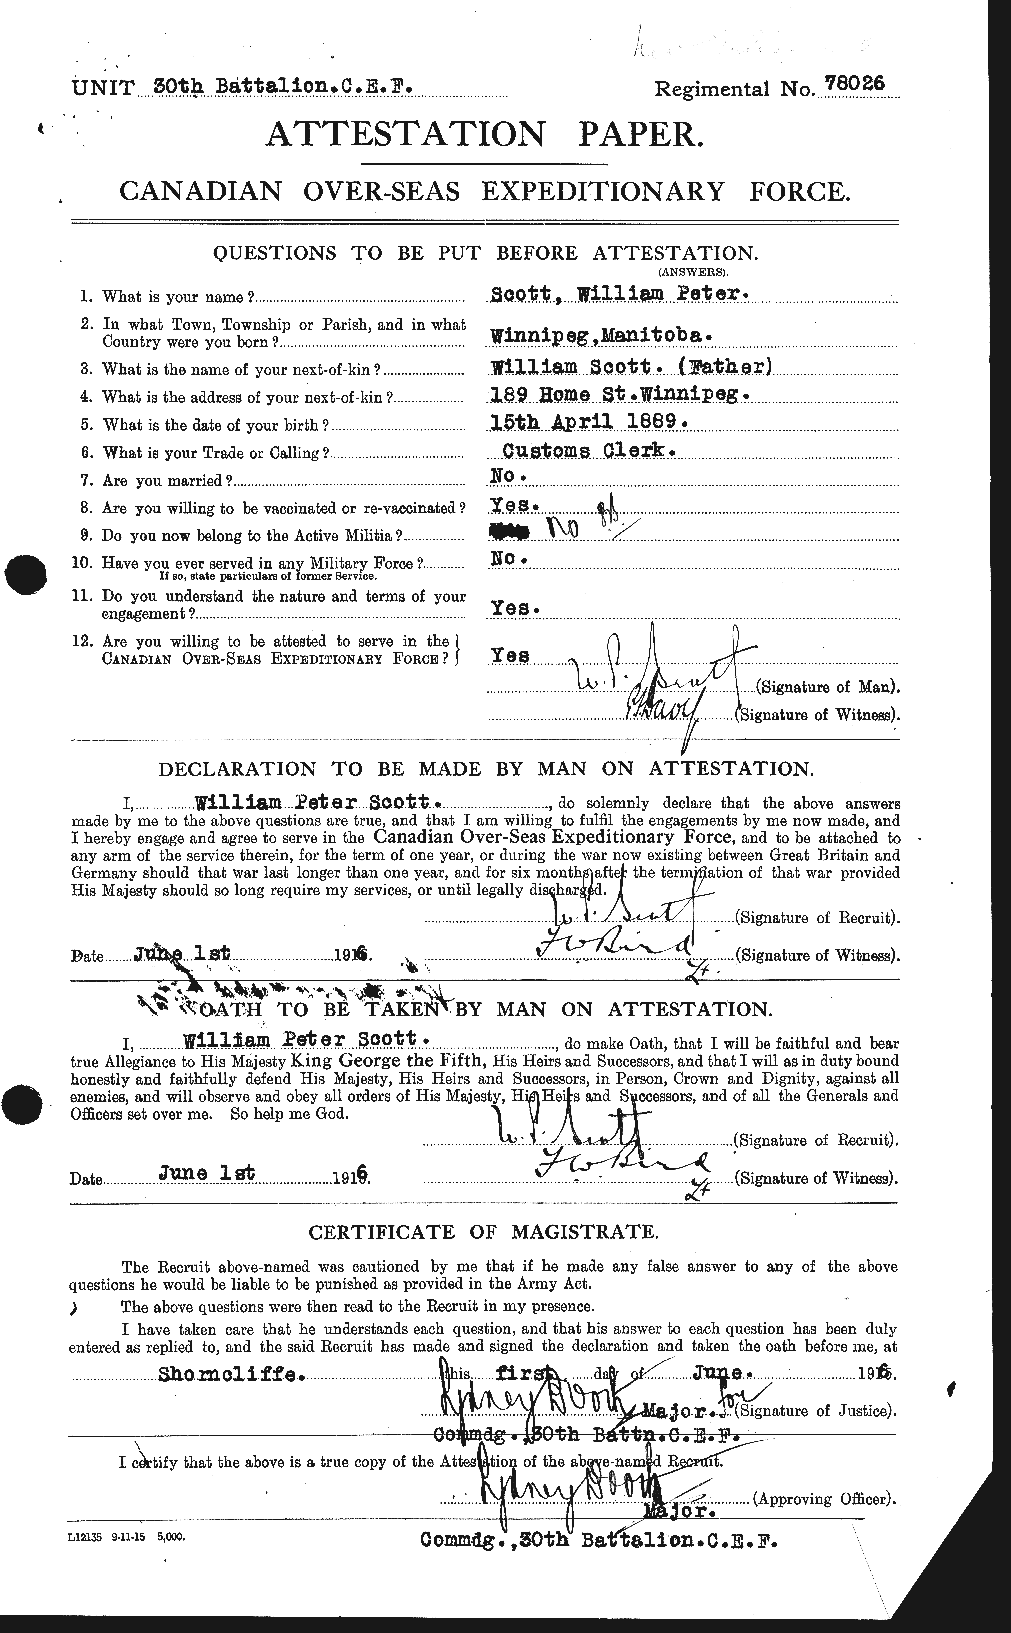 Dossiers du Personnel de la Première Guerre mondiale - CEC 086745a